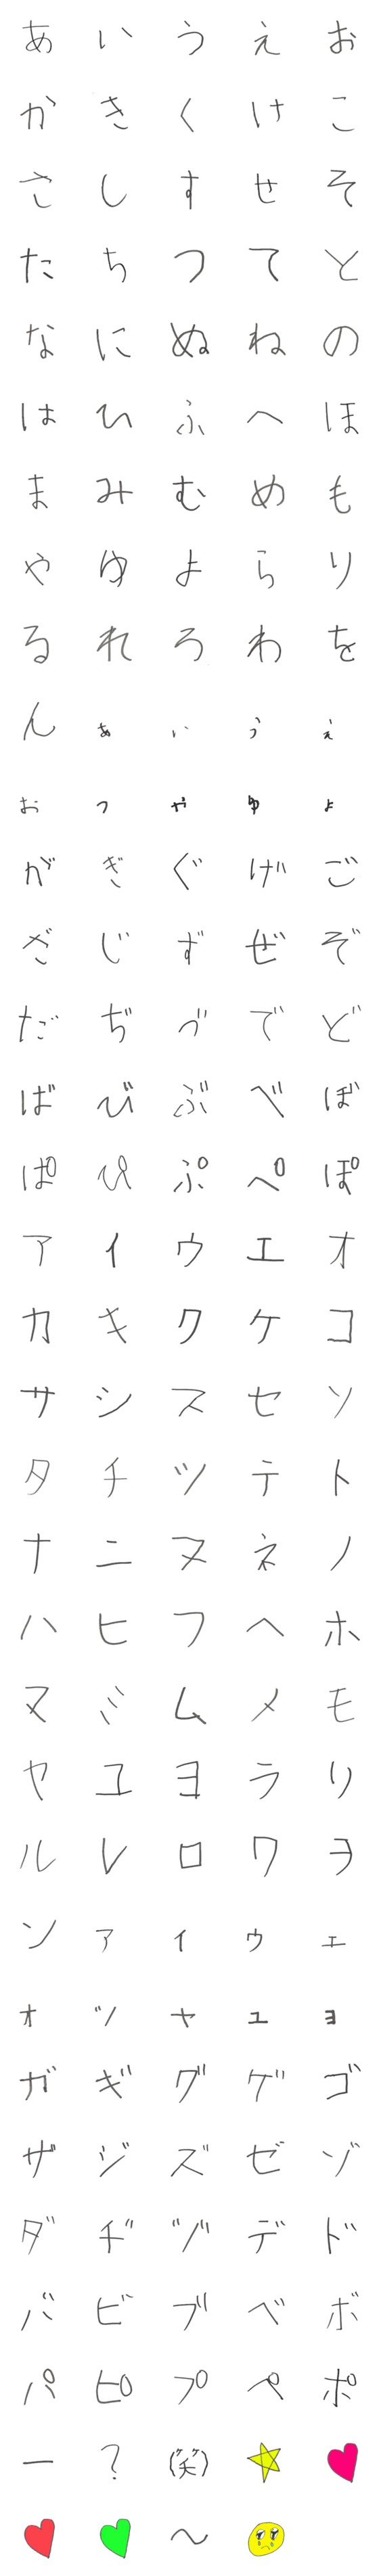 [LINE絵文字]子供の字【ひらがなとカタカナ】の画像一覧